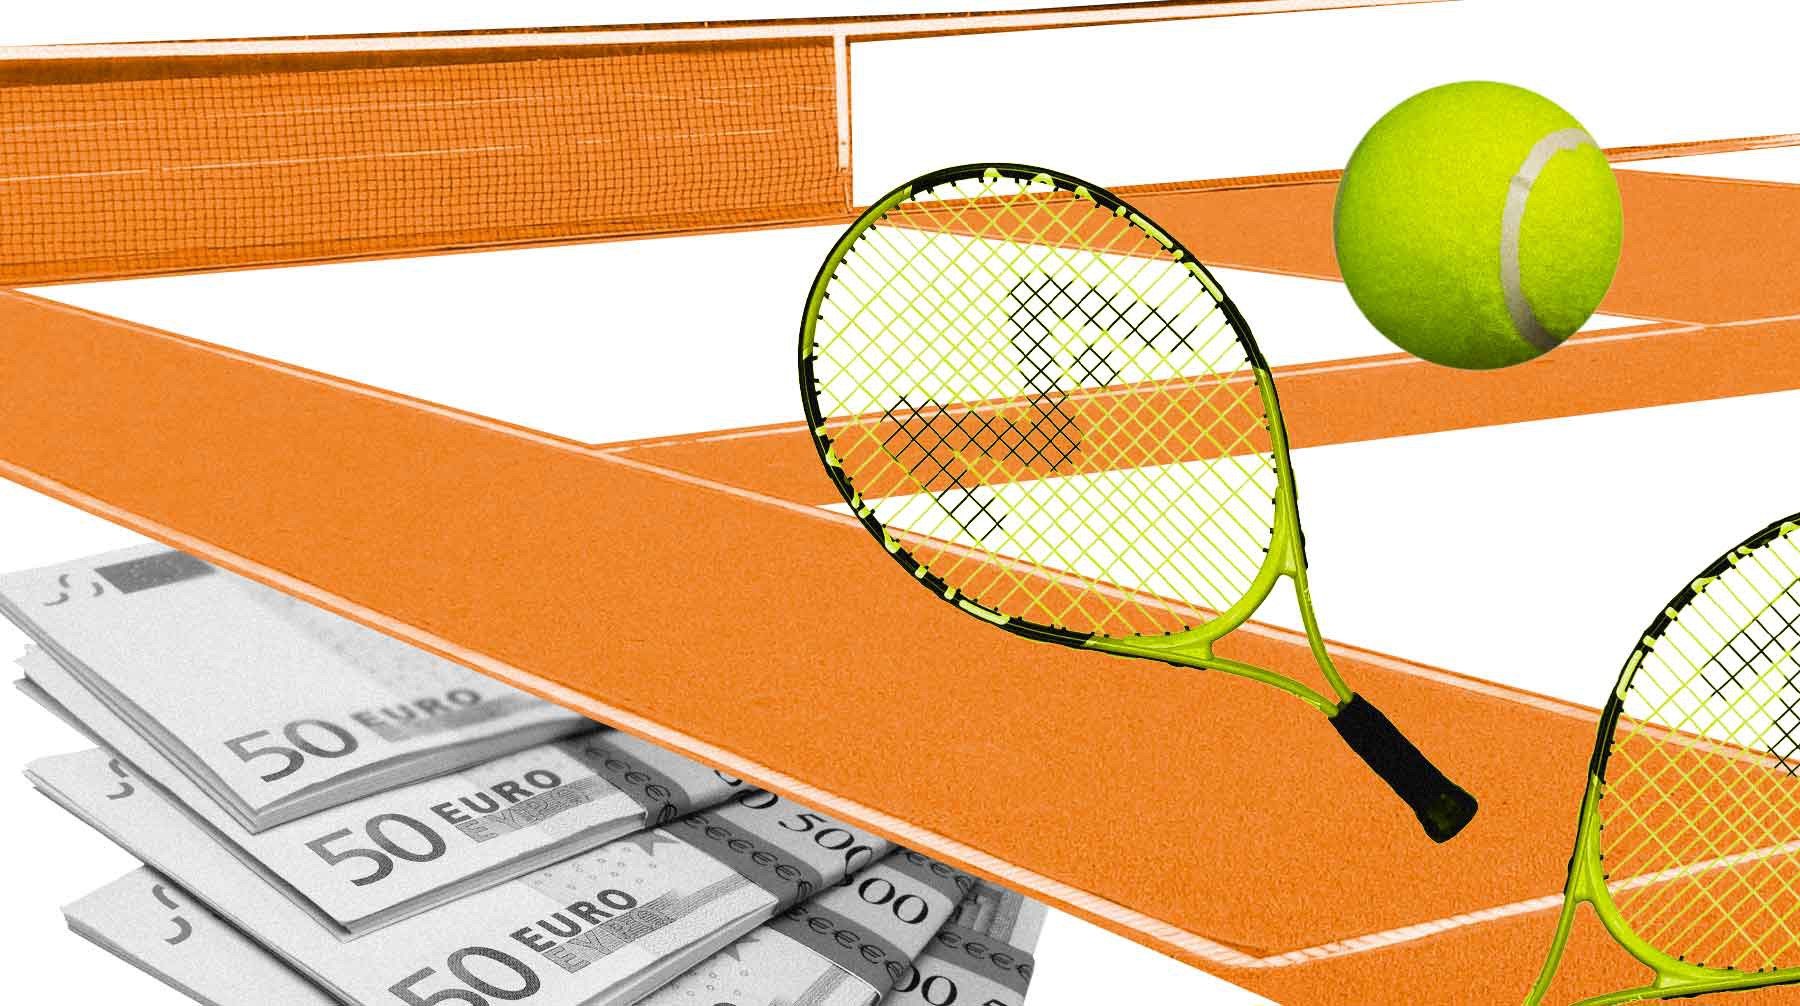 Dailystorm - Договоримся? Большой теннис страдает от коррупции на турнирах низкого ранга